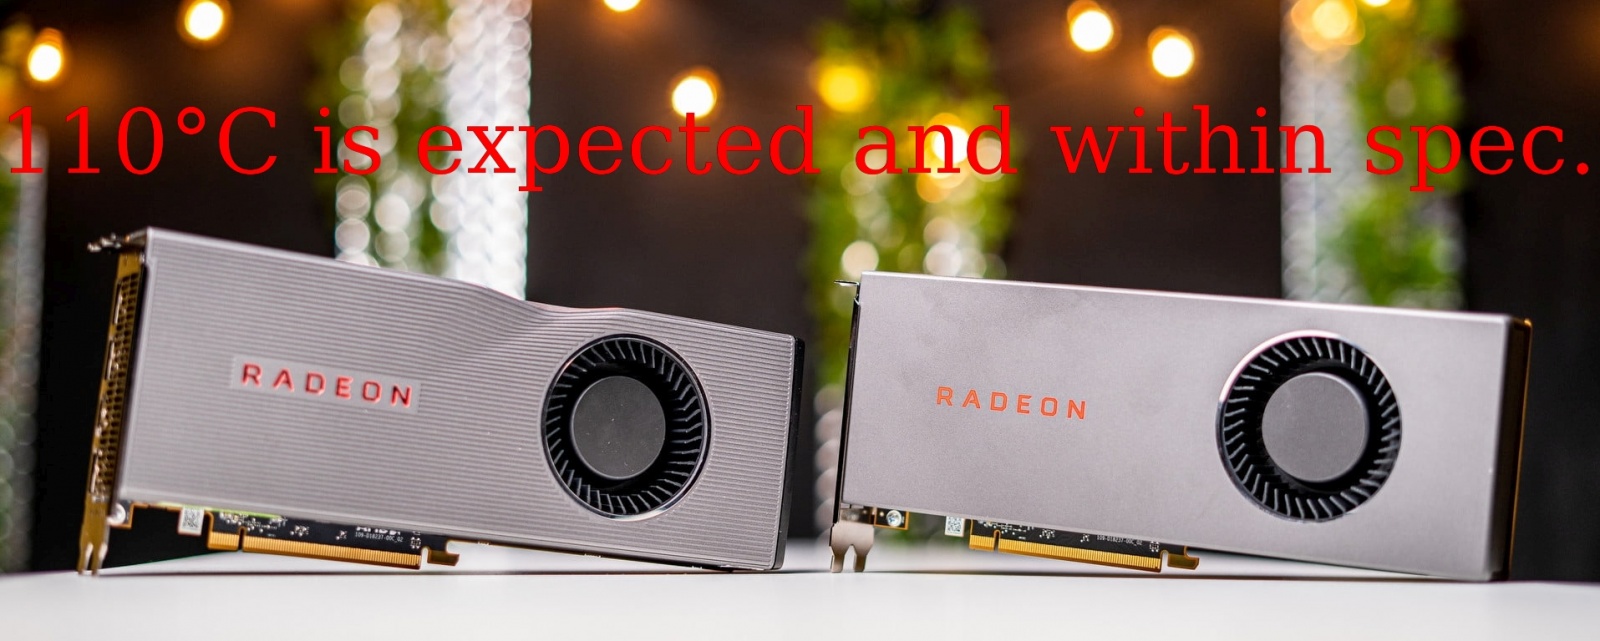 Для GPU серии AMD Radeon RX 5700 температура 110°C — это «нормально, такие показания находятся в пределах спецификации» - 1